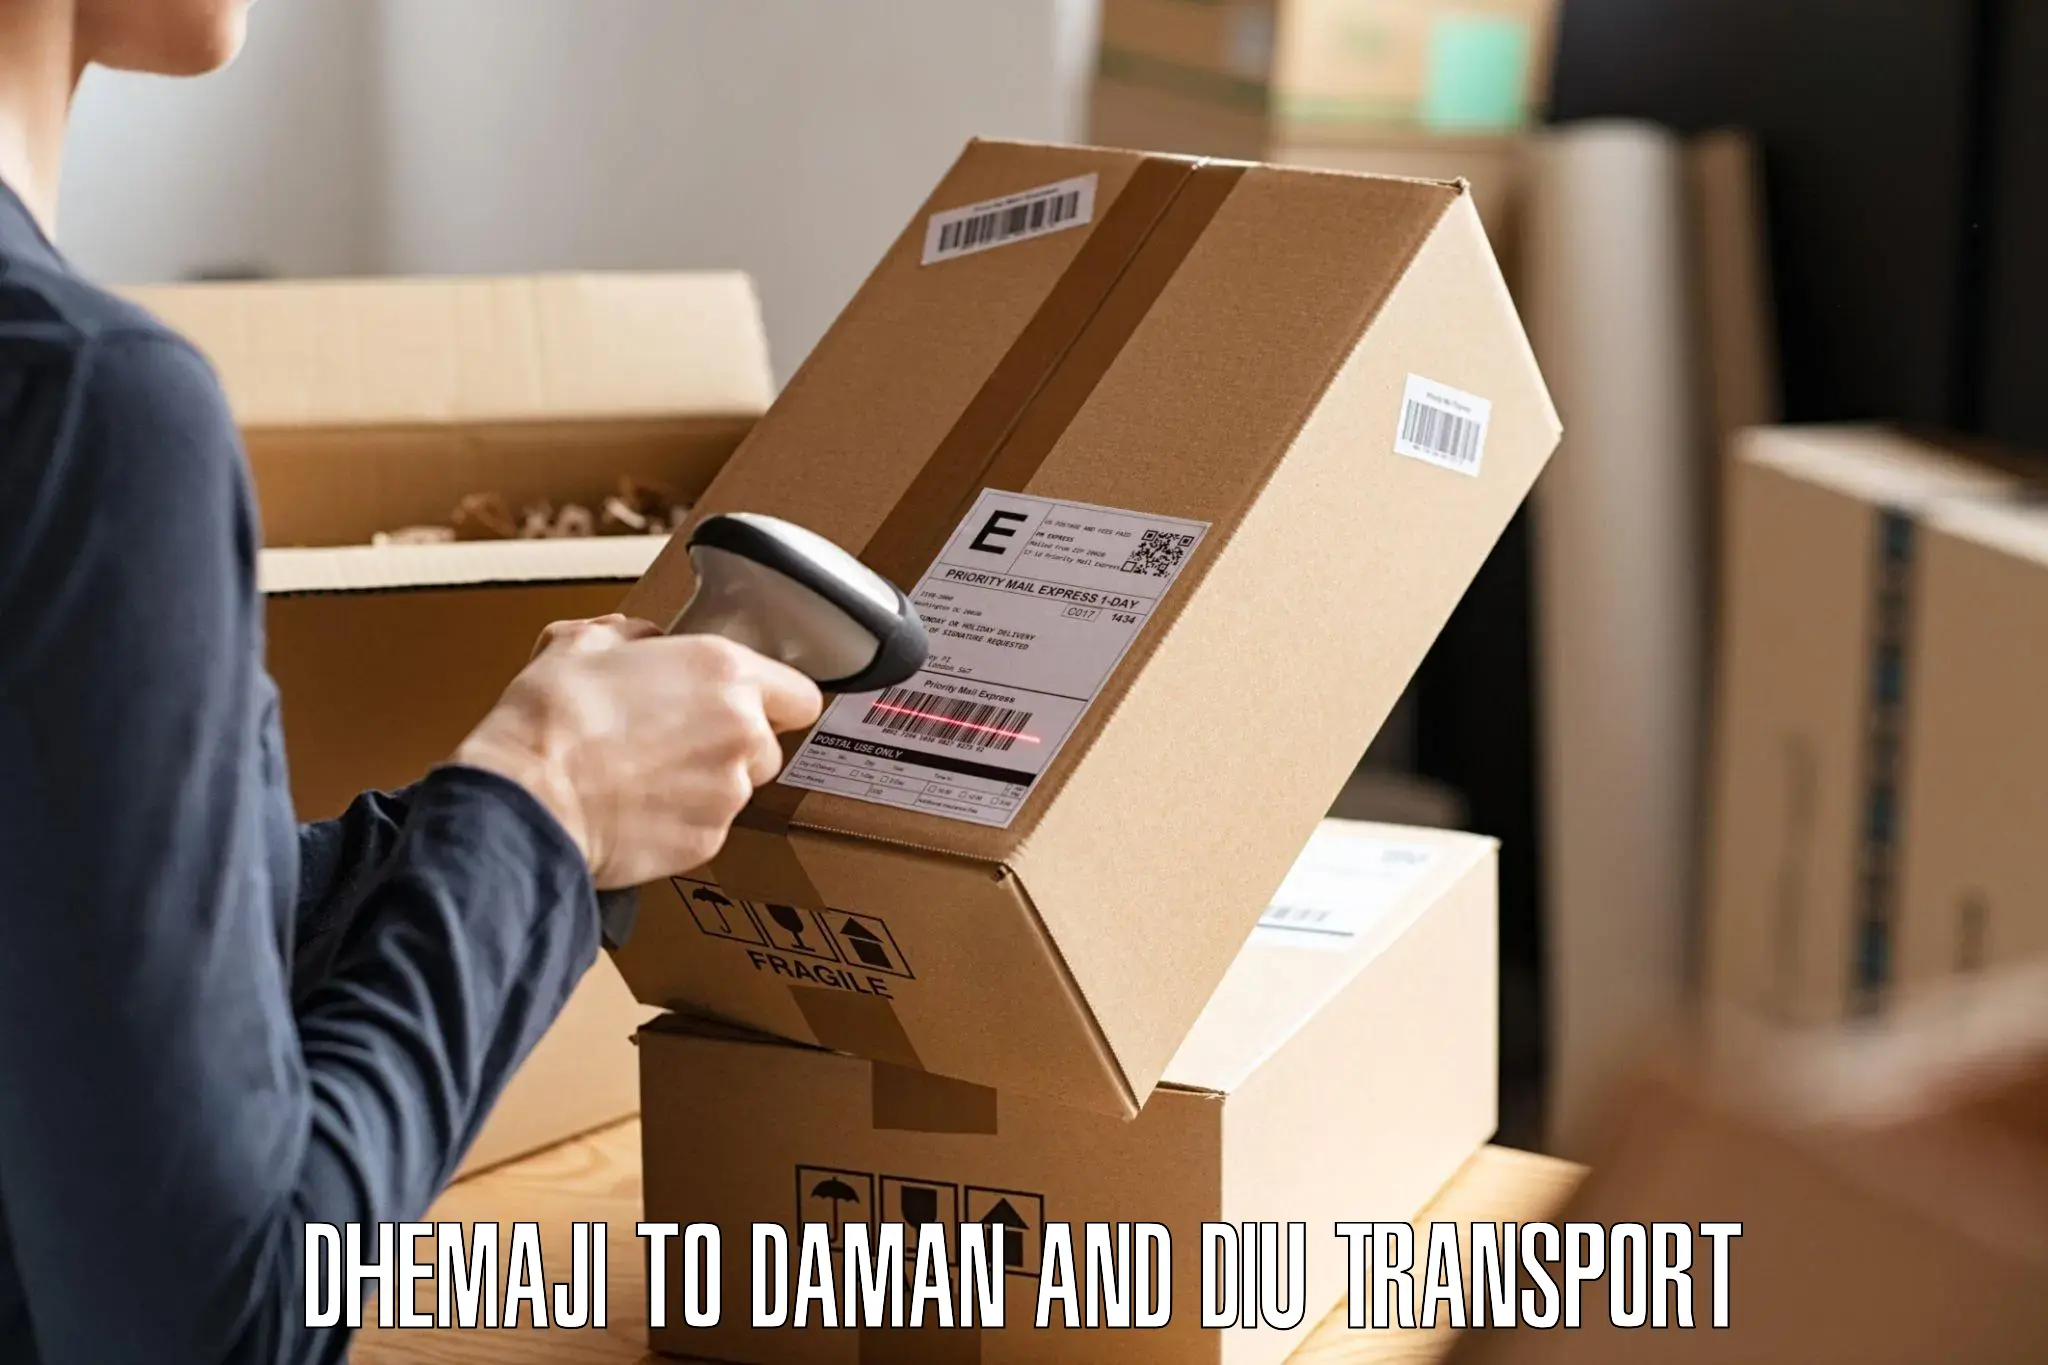 Lorry transport service Dhemaji to Daman